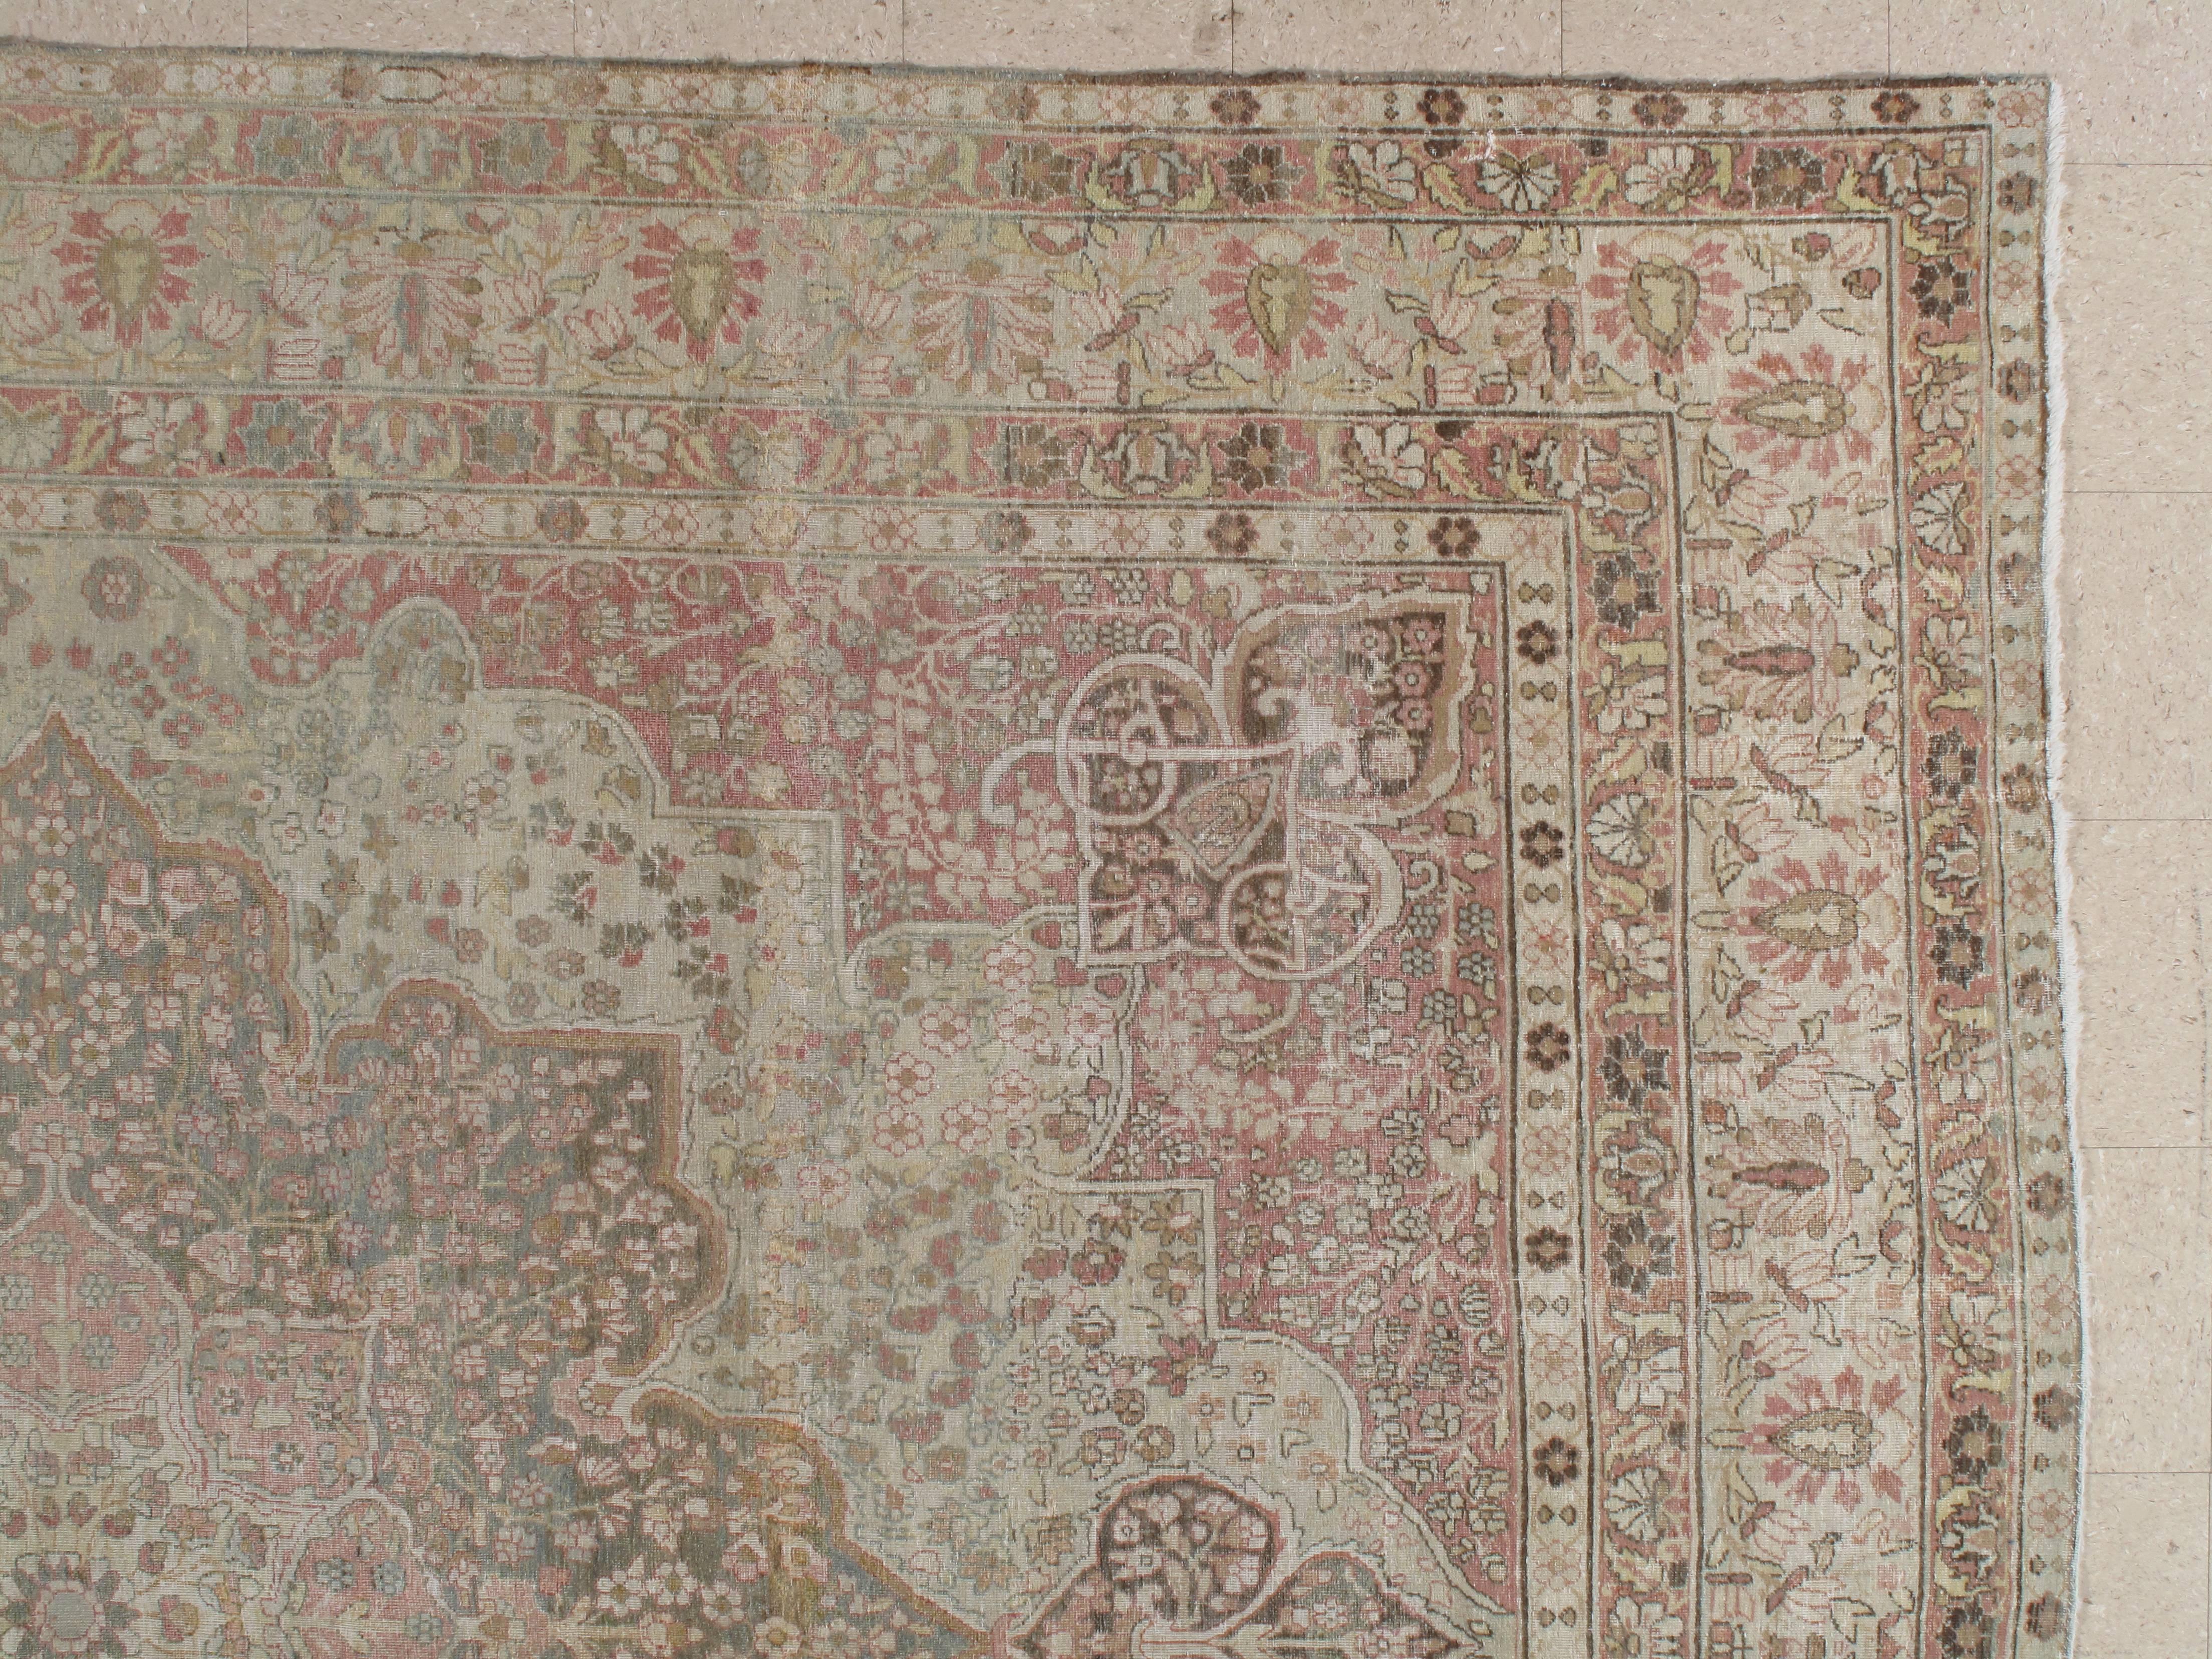 Persian Antique Lavar Kerman Carpet, Soft Pastel Colors, Ivory, Pink, Light Gray/Blue For Sale